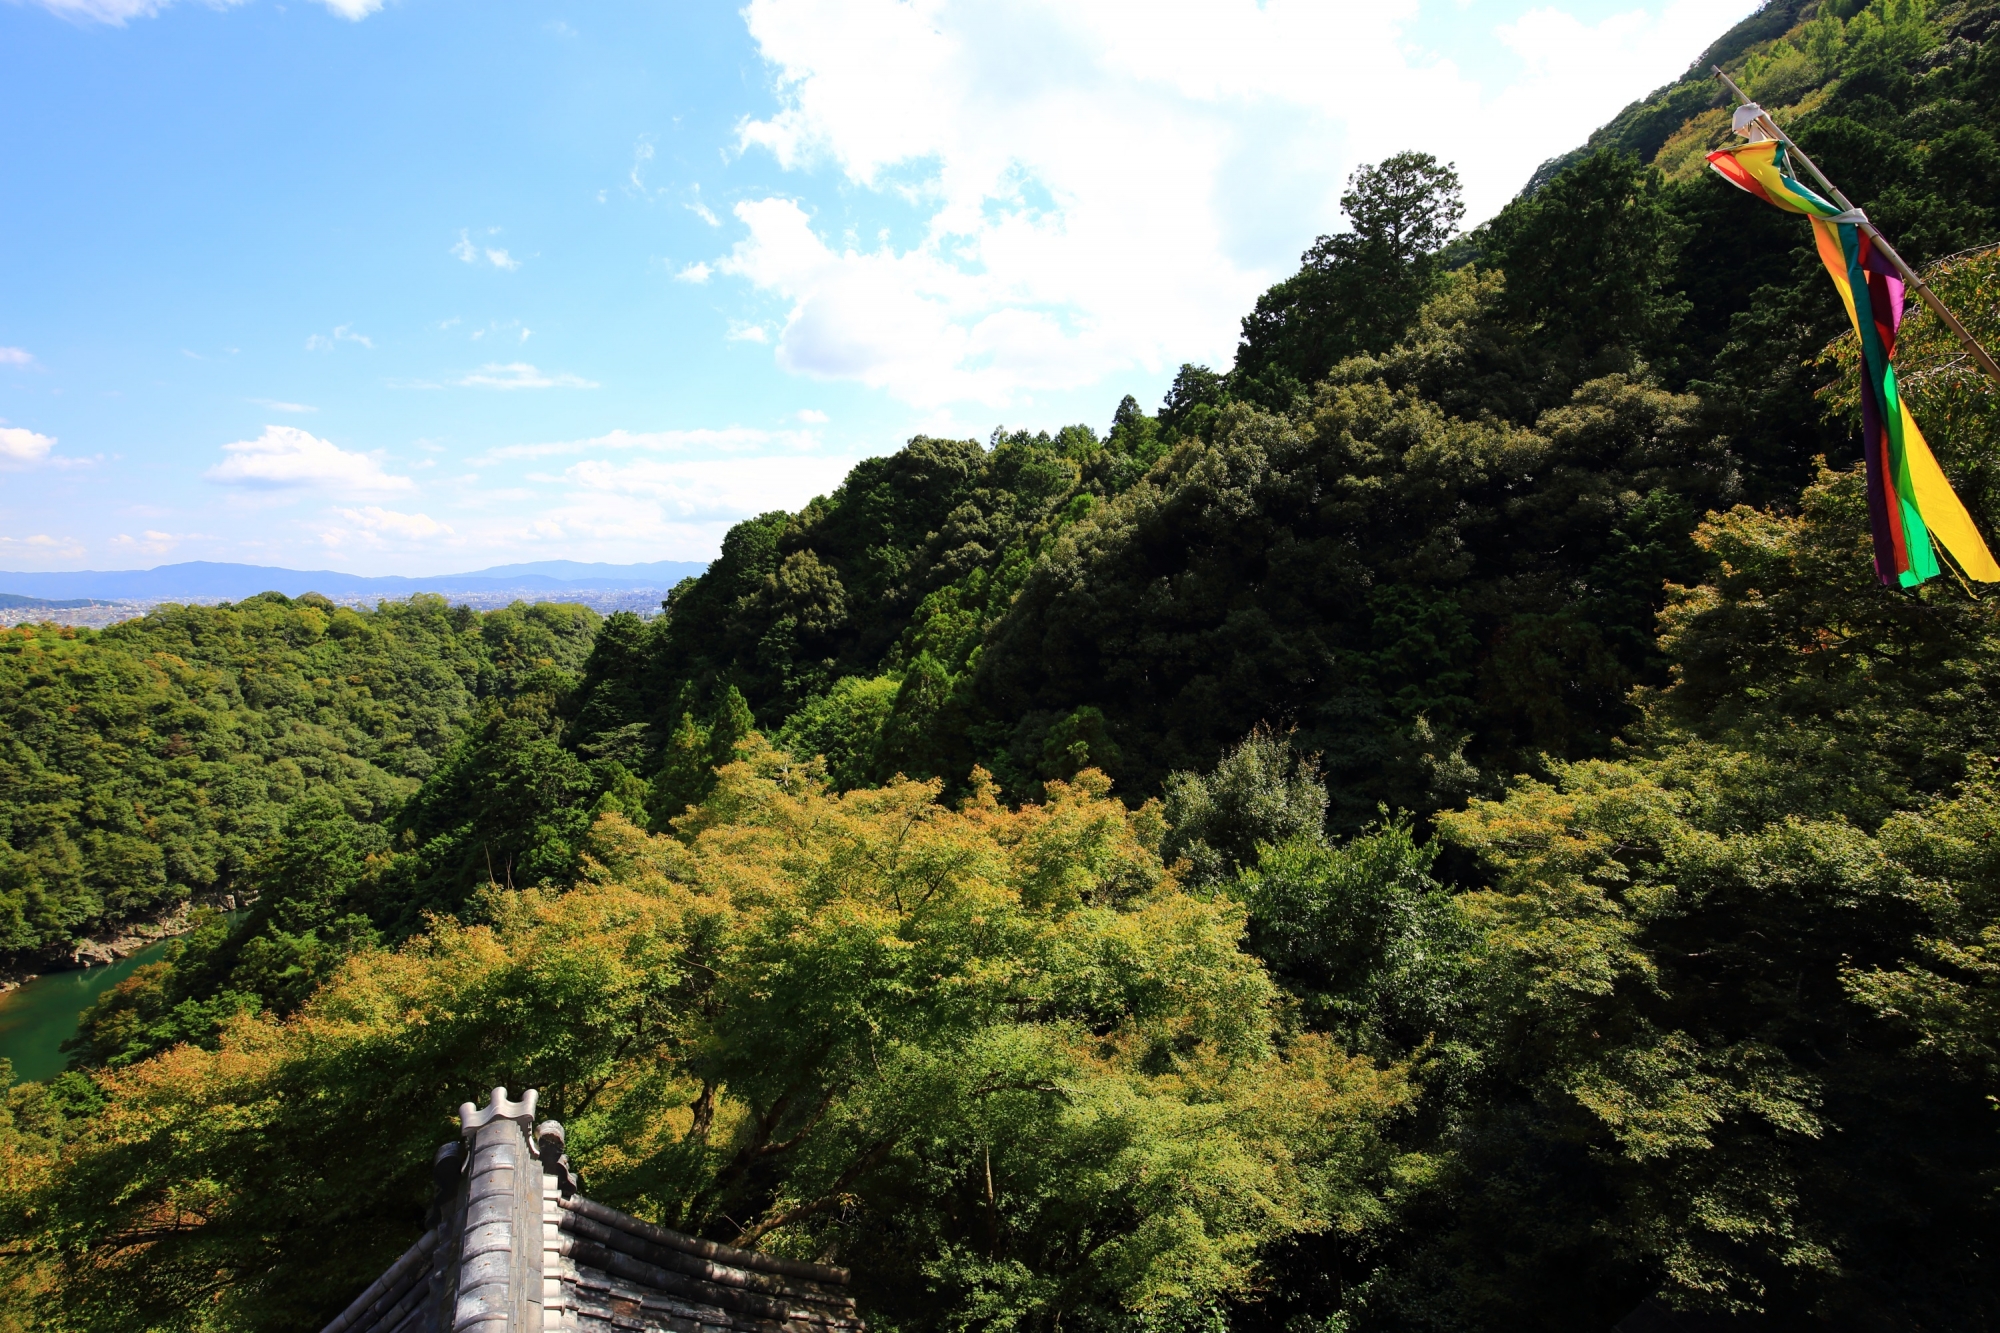 嵐山の大悲閣 千光寺から眺める絶景 2015年10月6日